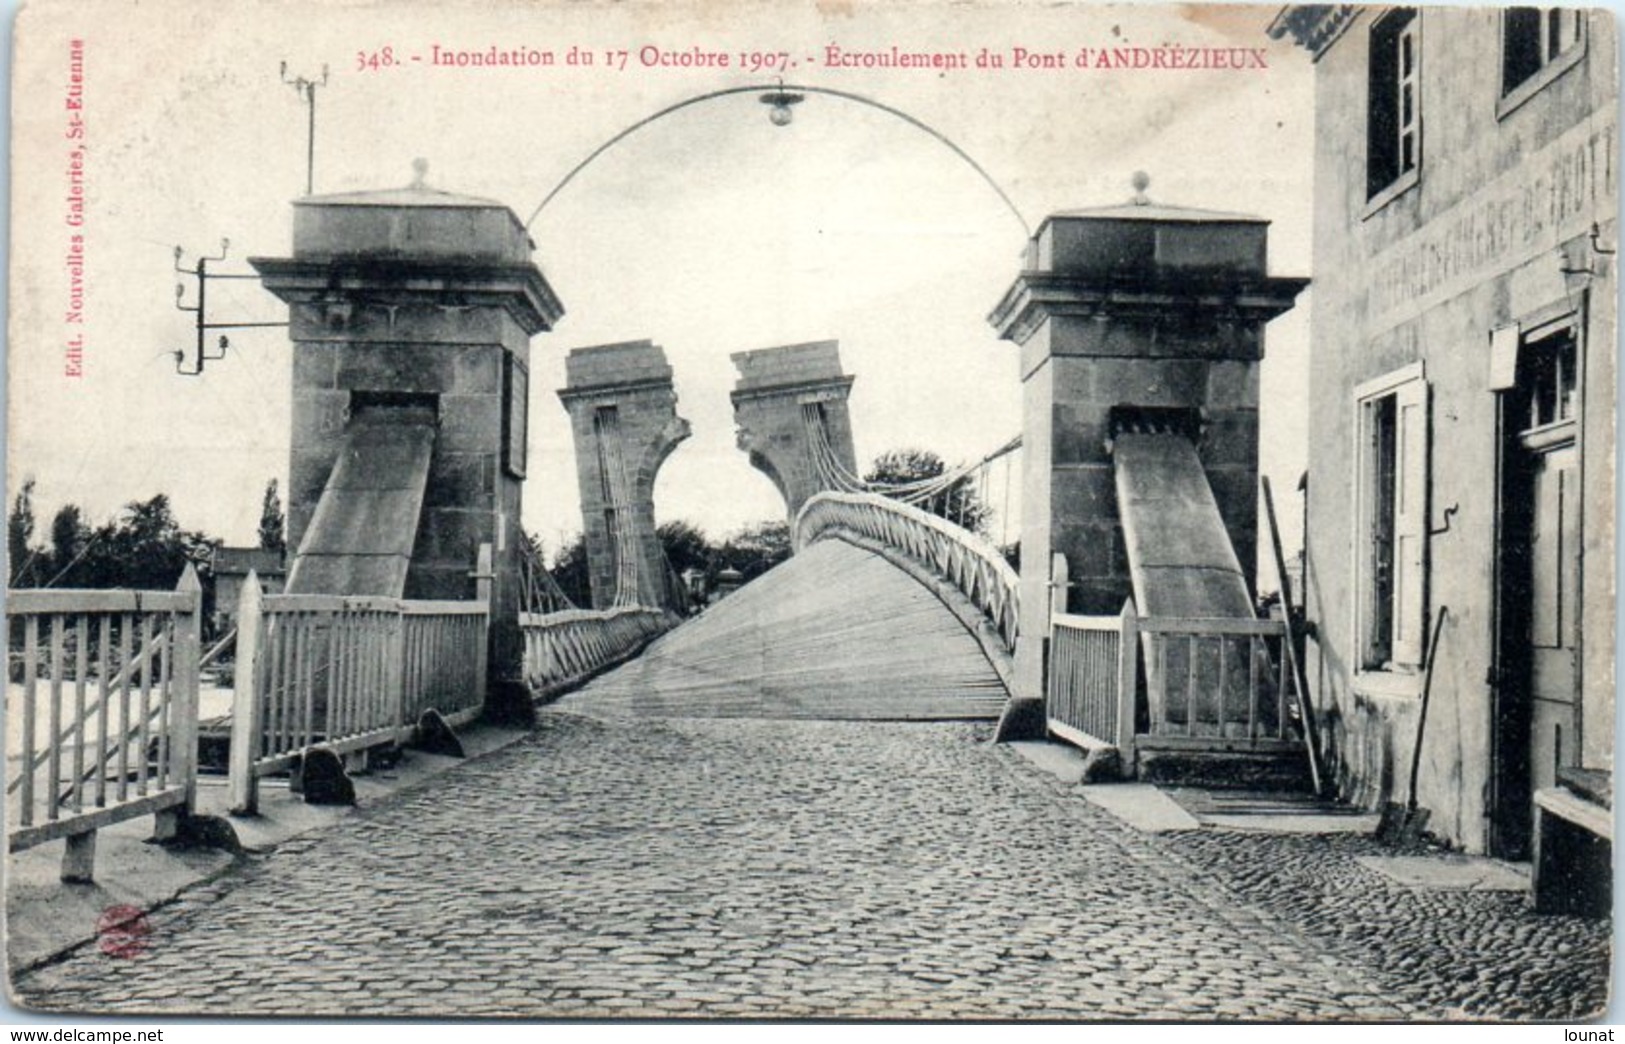 42 ANDREZIEUX - Inondation Du 17 Octobre 1907 - Ecroulement Du Pont - Andrézieux-Bouthéon